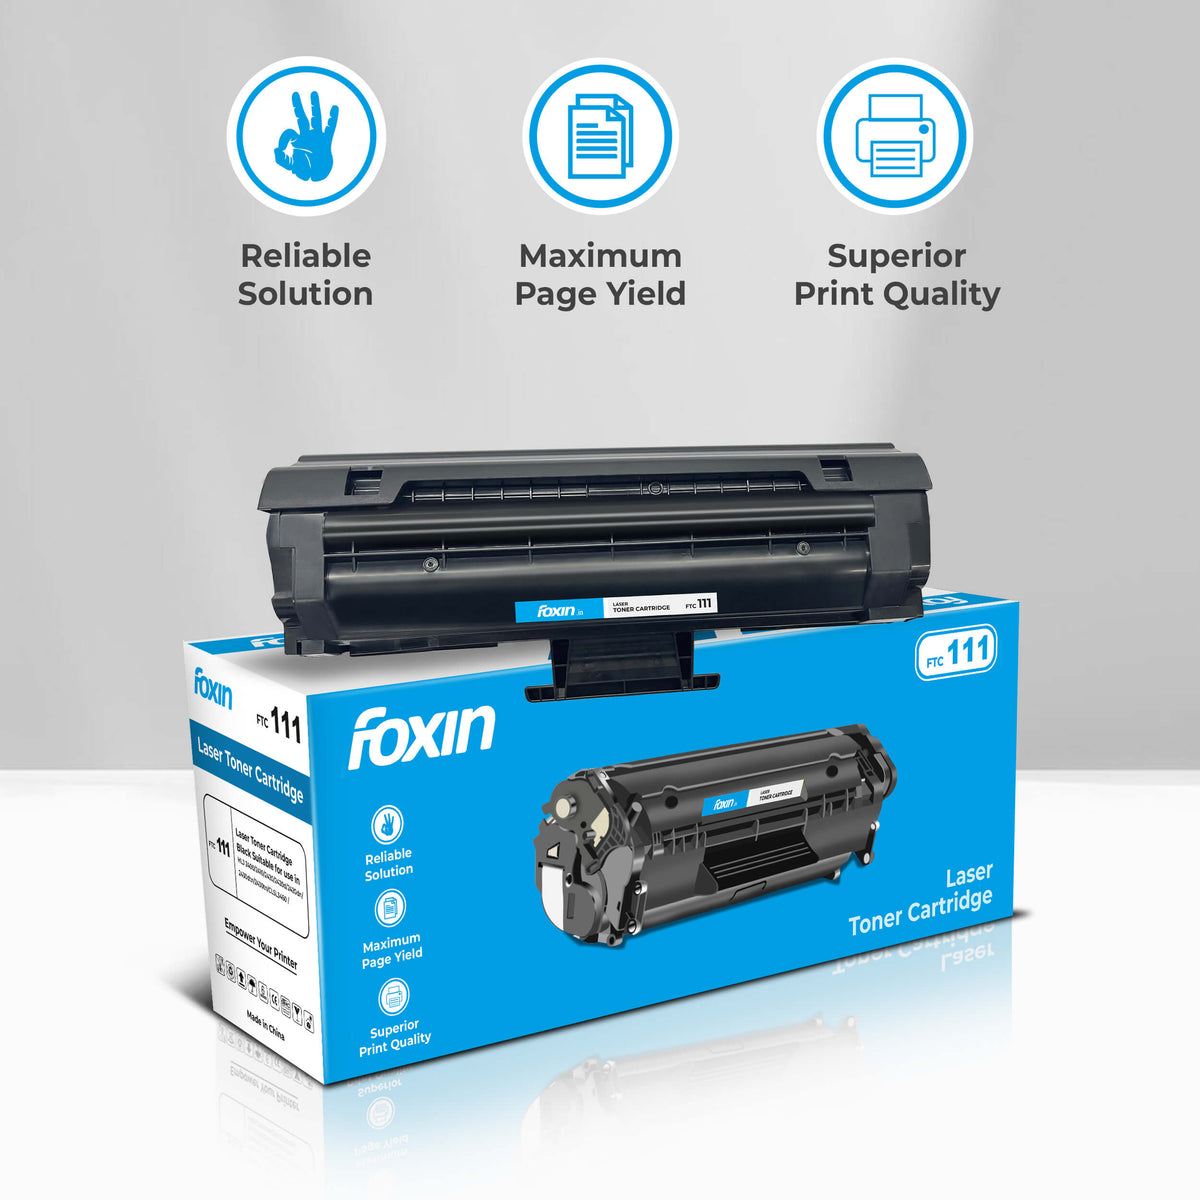 Foxin FTC 111/D111S Toner Cartridge for Samsung Xpress SL-M2070, SL-M2070F, SL-M2070FW, SL-M2070W, SL-M2071, SL-M2071F, SL-M2071FW, SL-M2071W, M2022, M2020W, M2026, M2026W